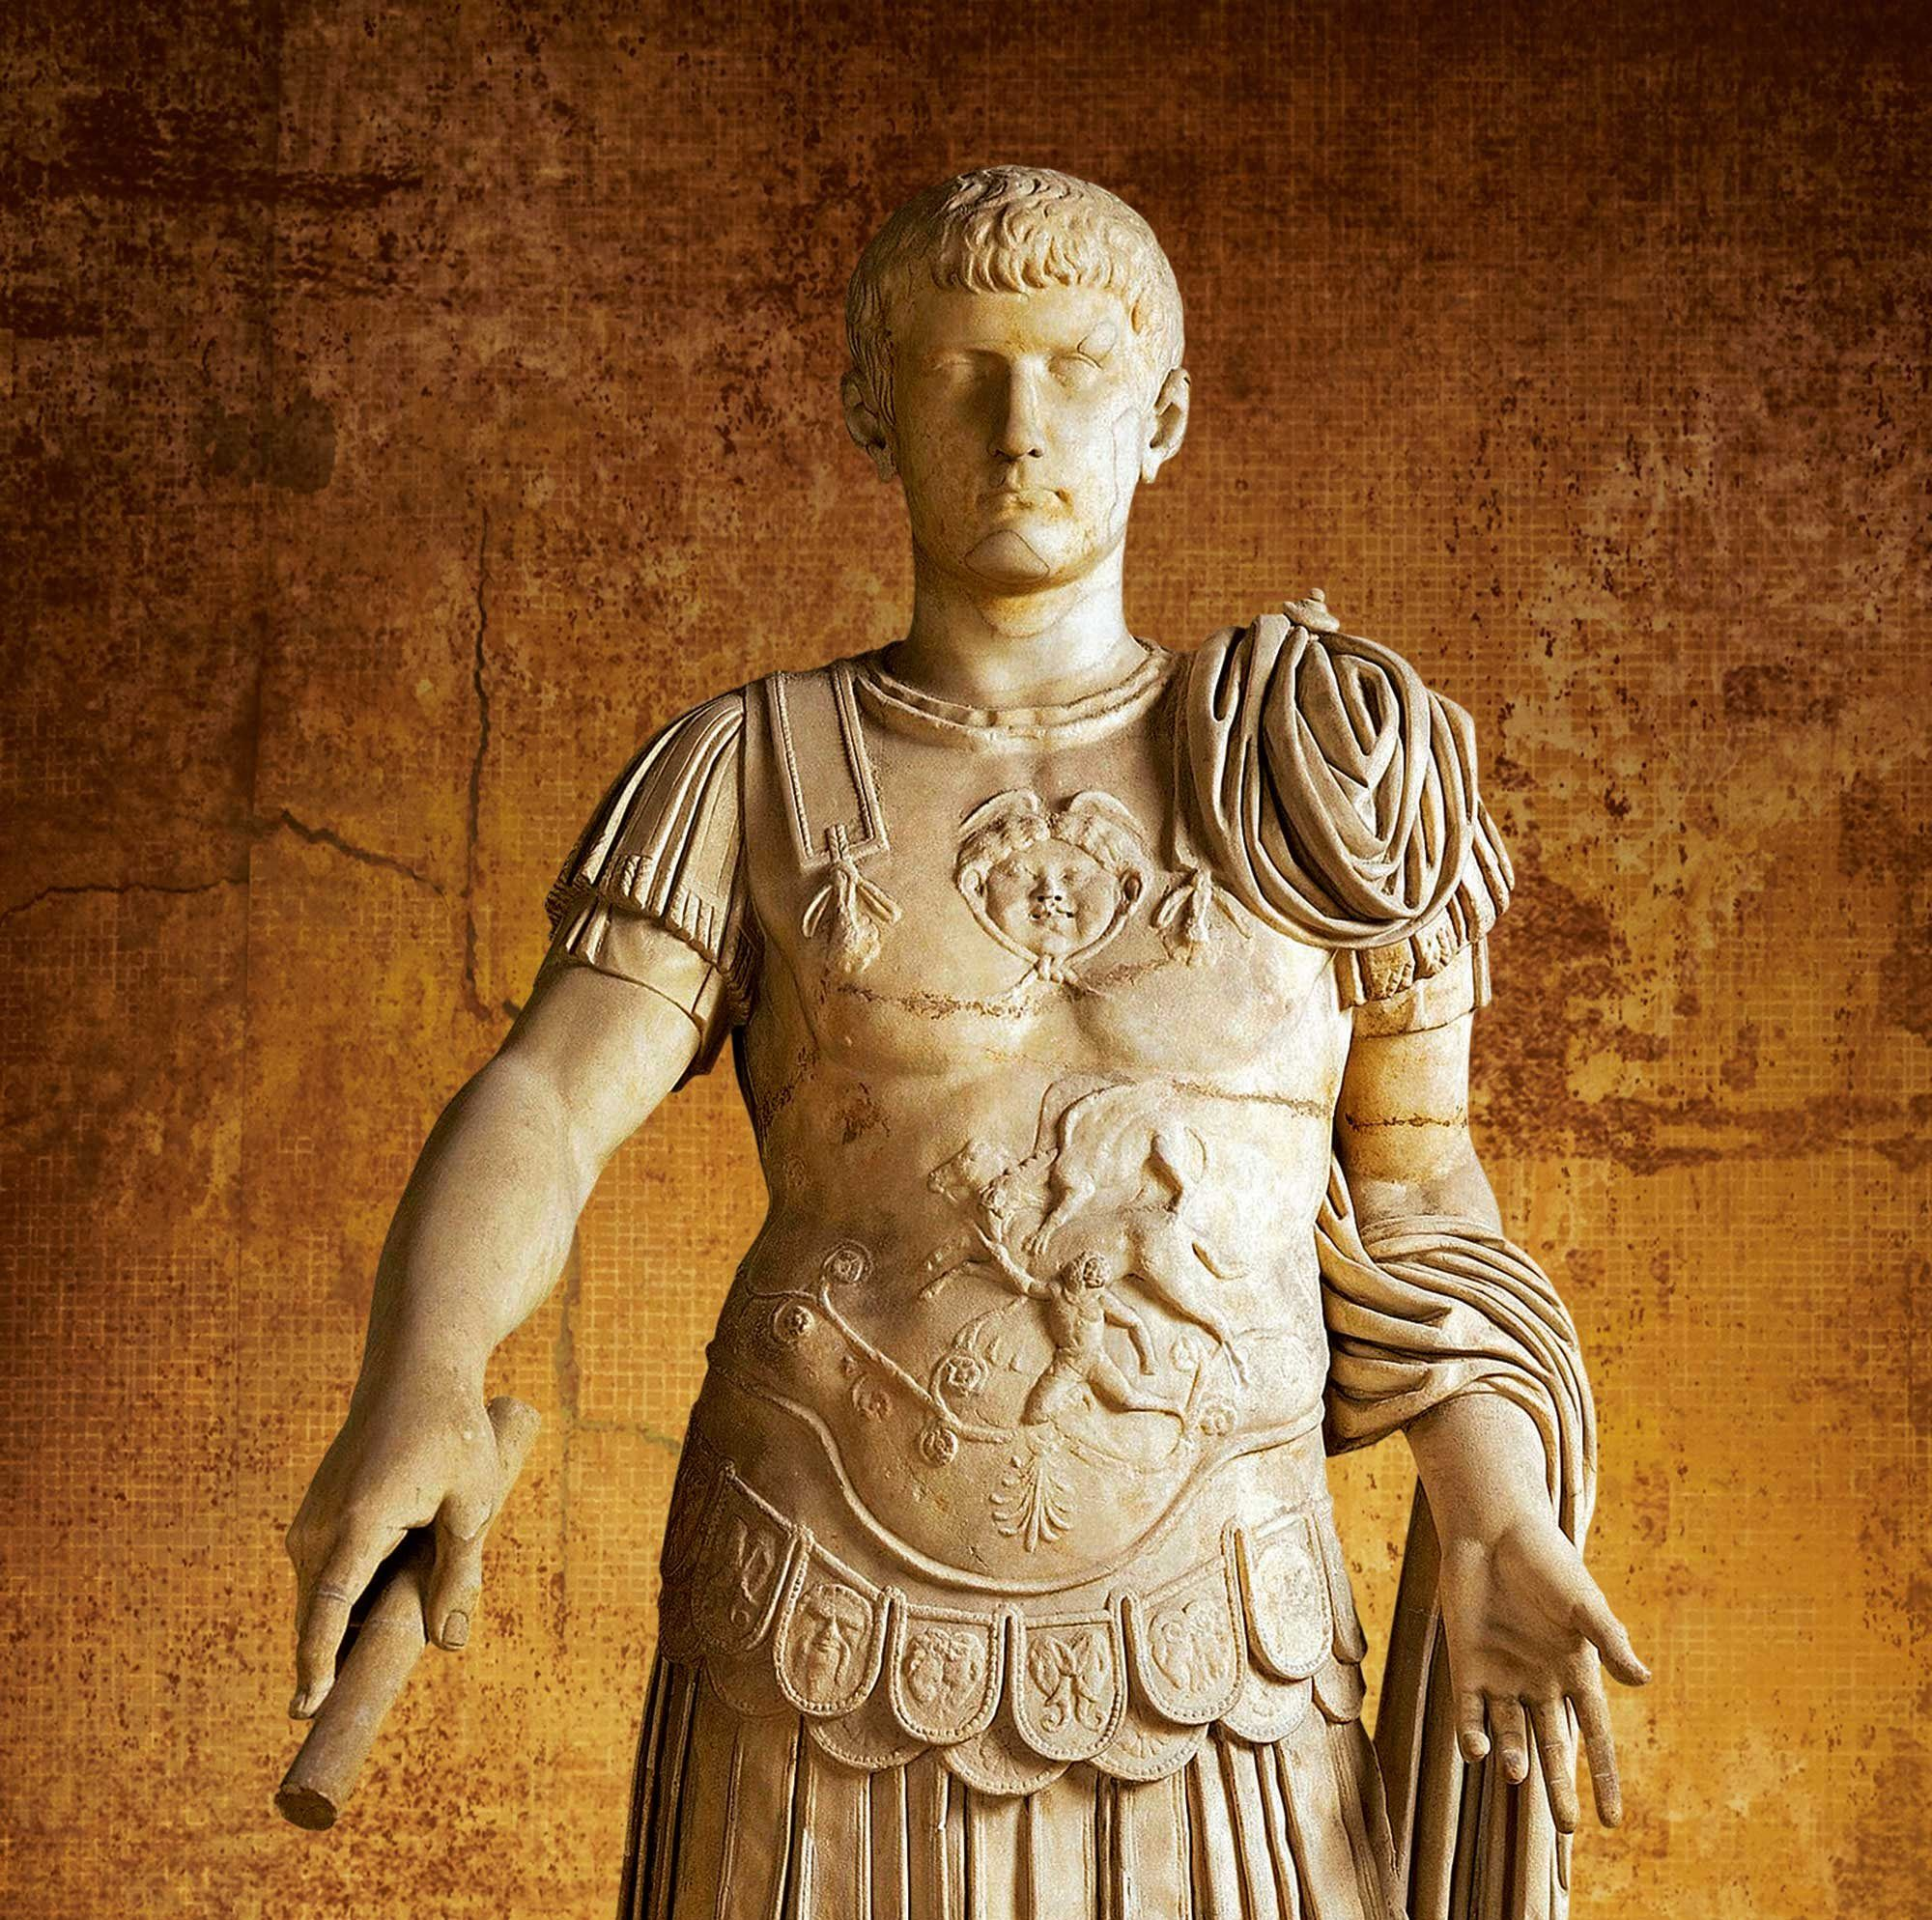 
											
											Калигула – абадий шармандалик рамзи. Ўзини худо деб ҳисоблаган Рим императори
											
											